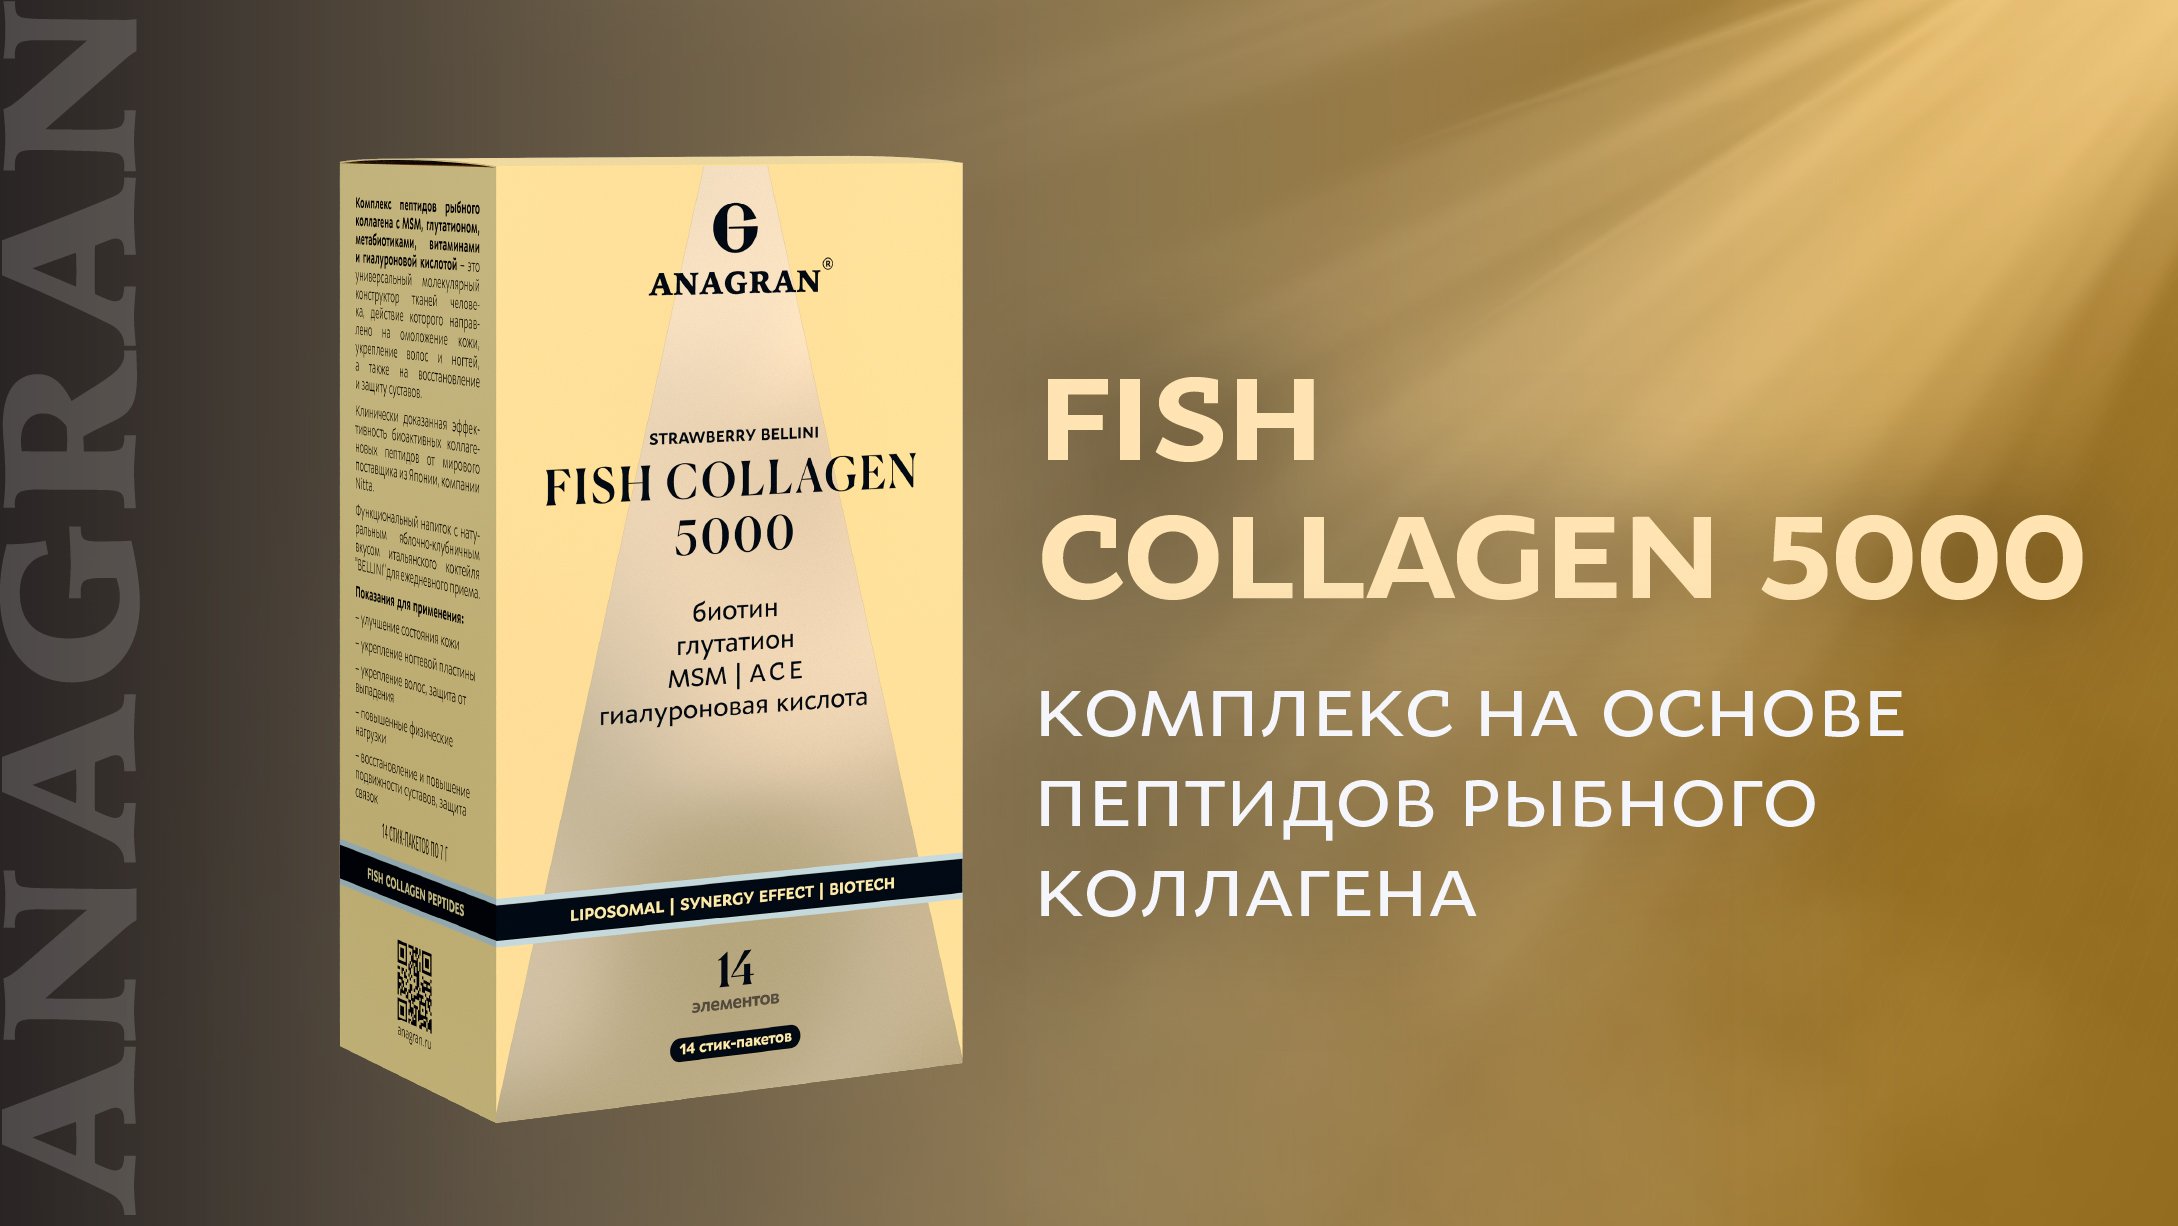 Fish collagen 5000 – комплекс на основе пептидов рыбного коллагена